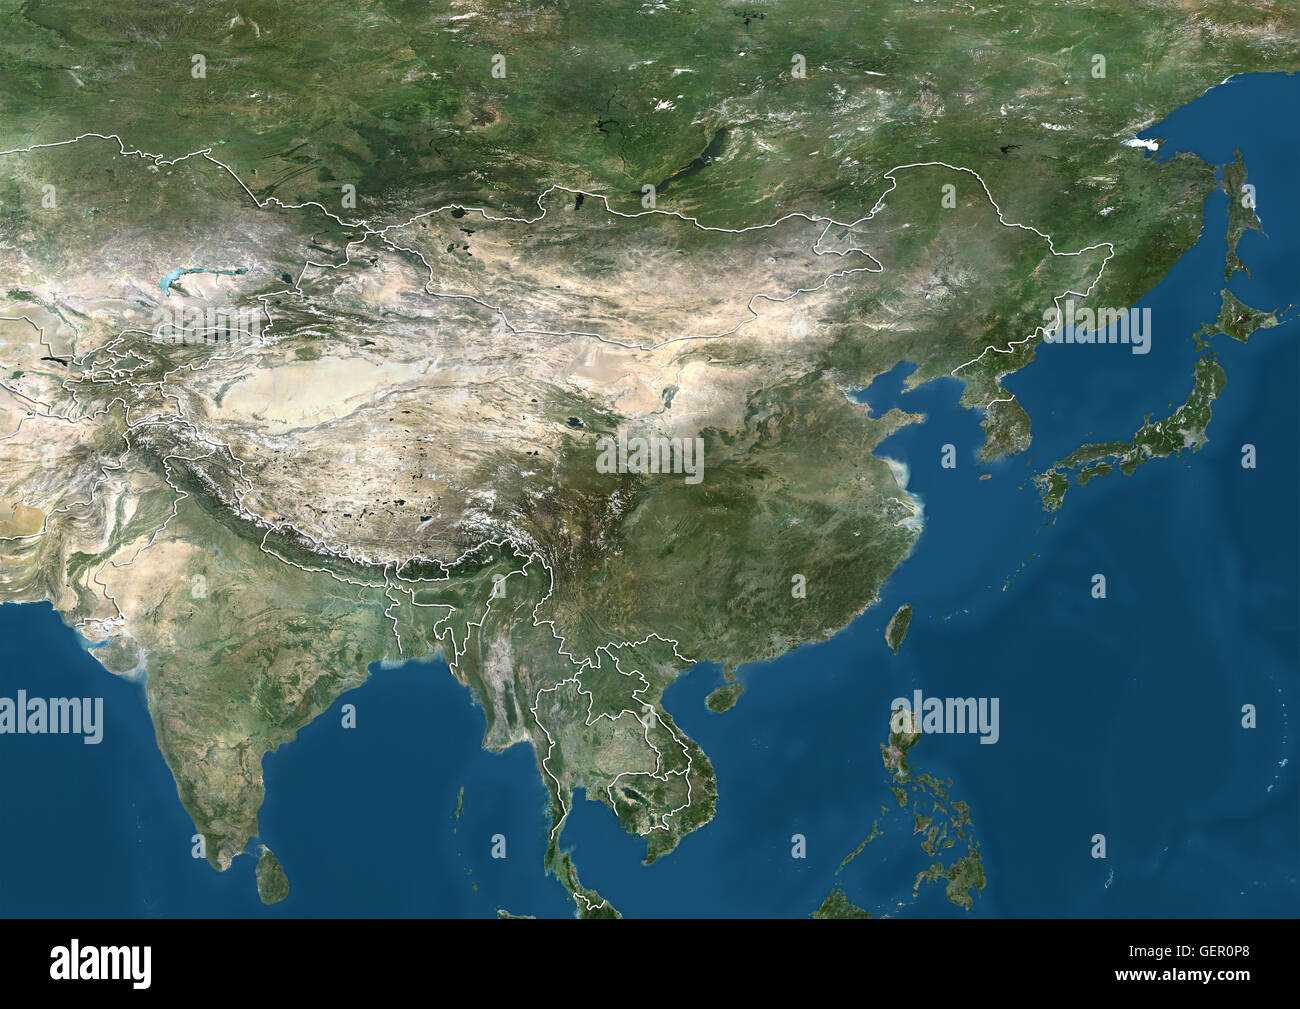 Vista satélite de Asia oriental y el Subcontinente Indio (con los límites del país). Esta imagen fue compilado a partir de datos adquiridos por los satélites Landsat. Foto de stock